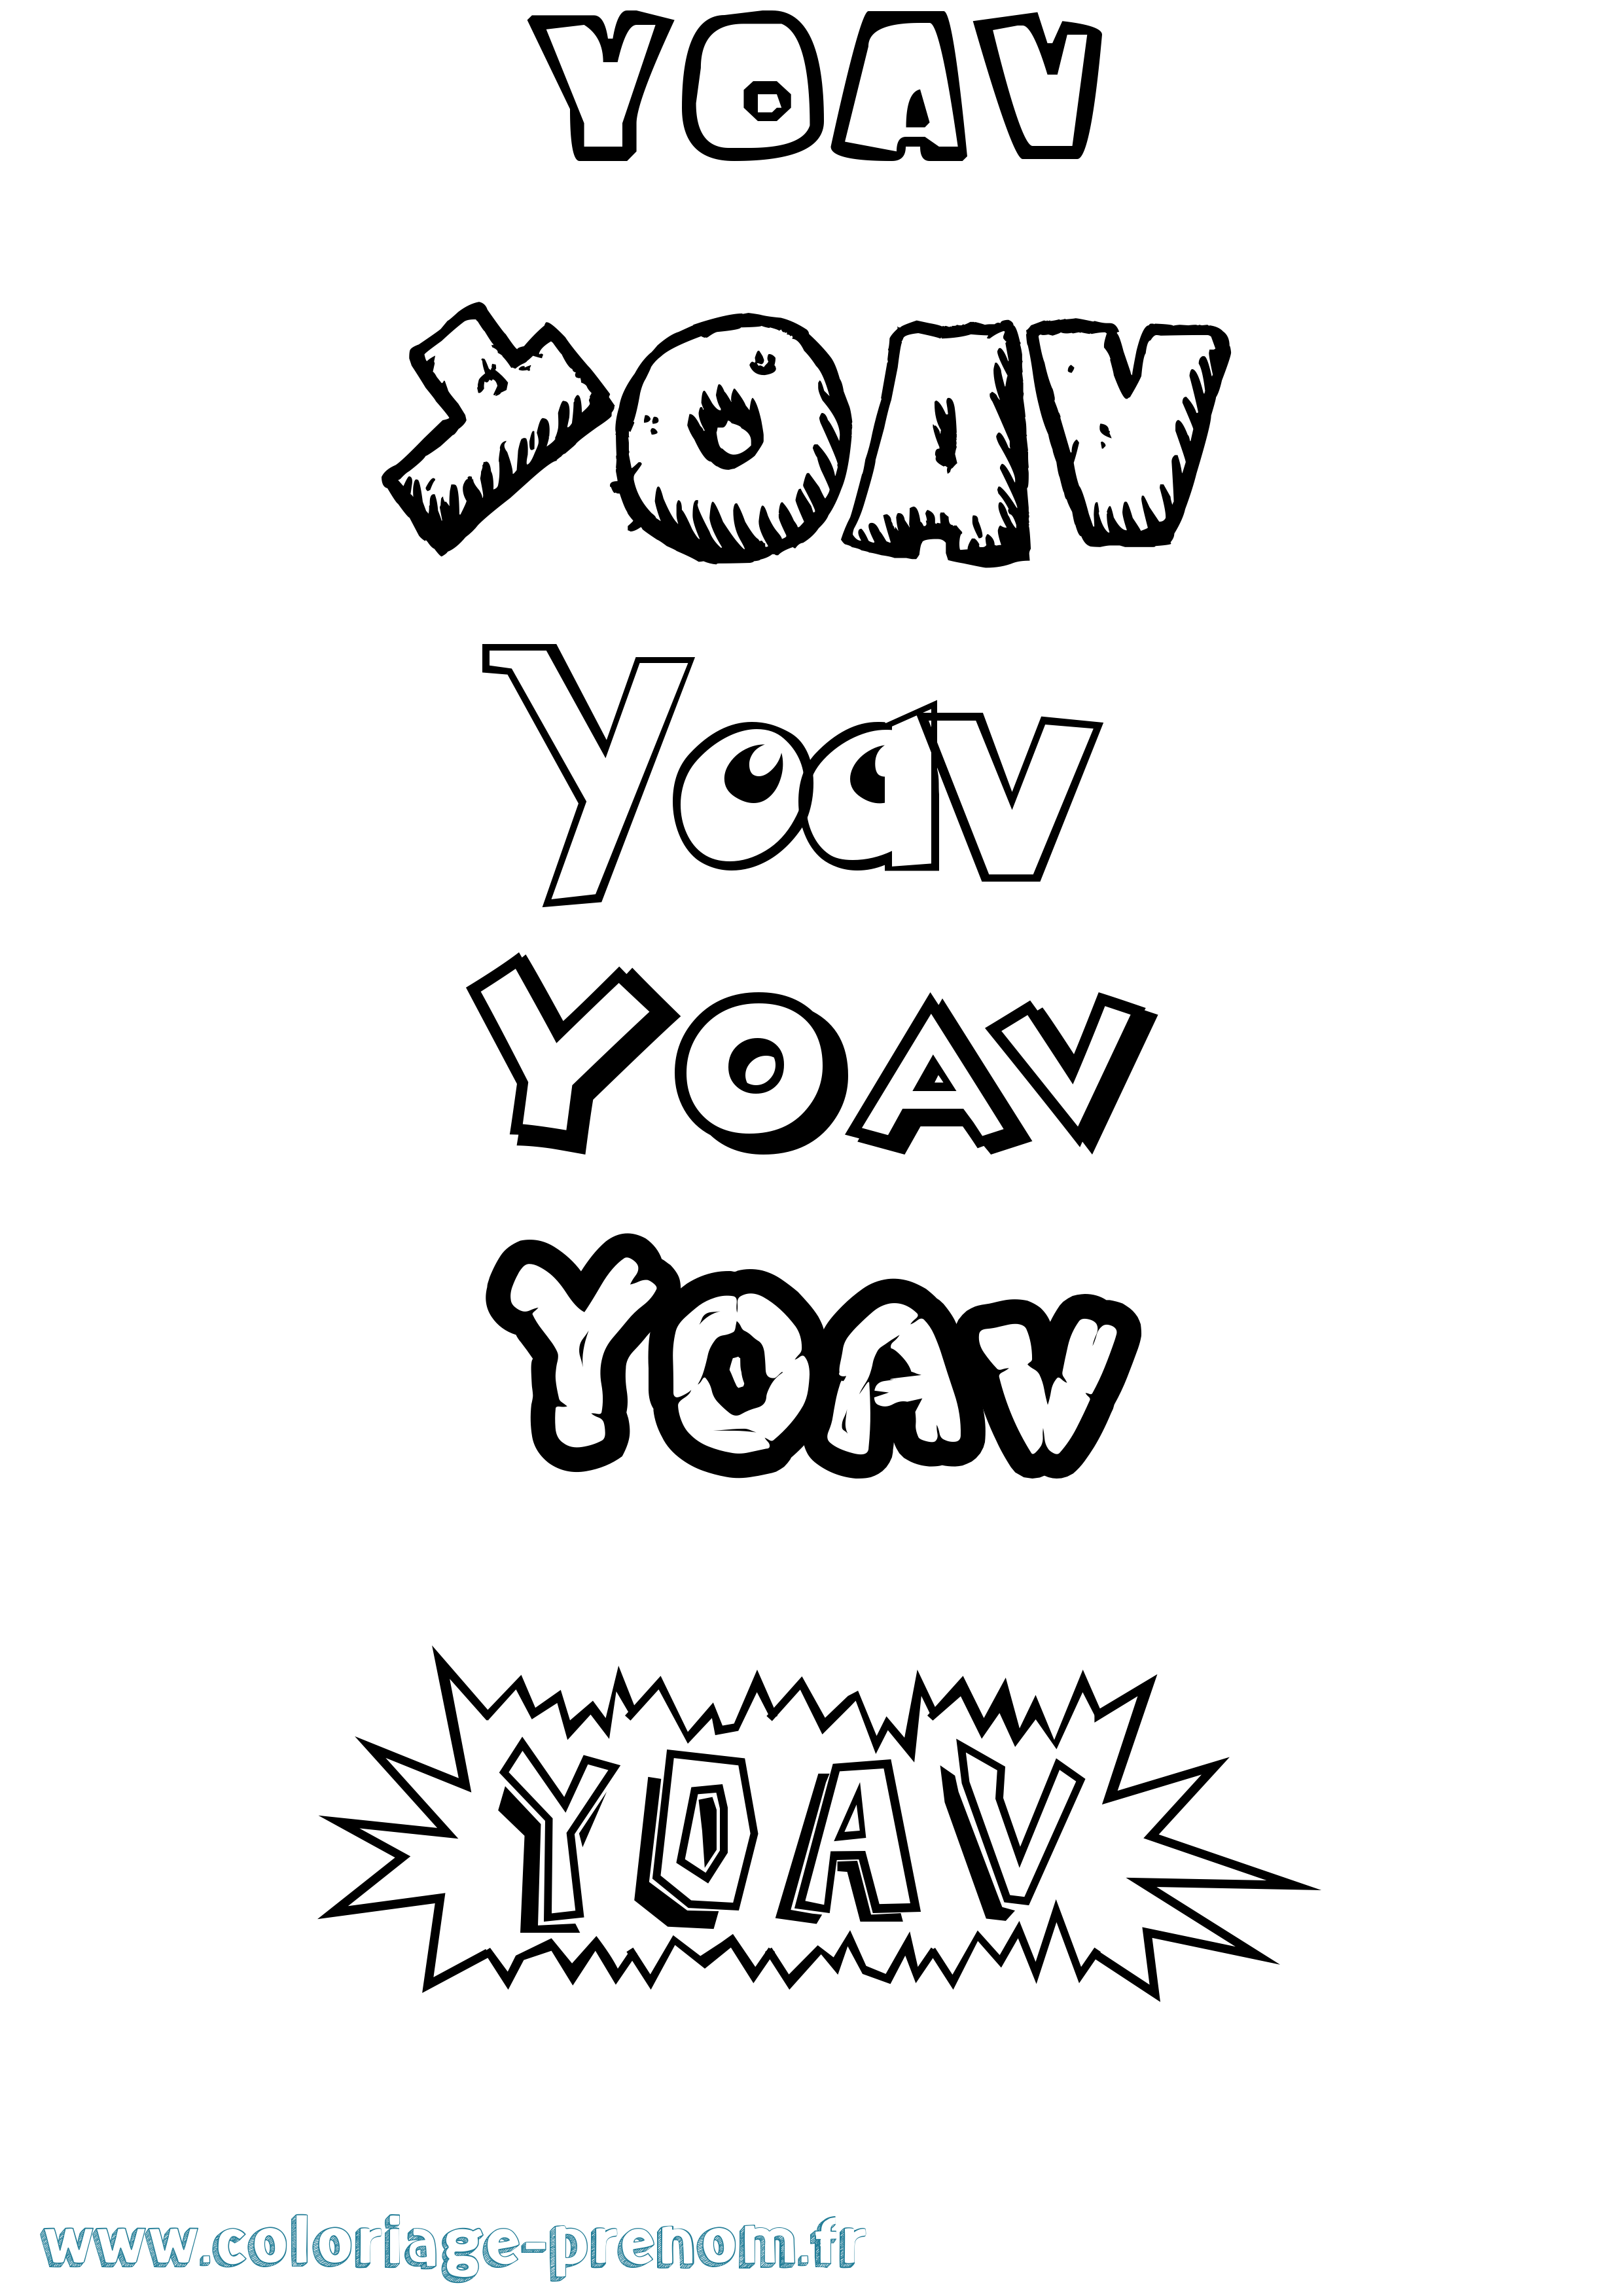 Coloriage prénom Yoav